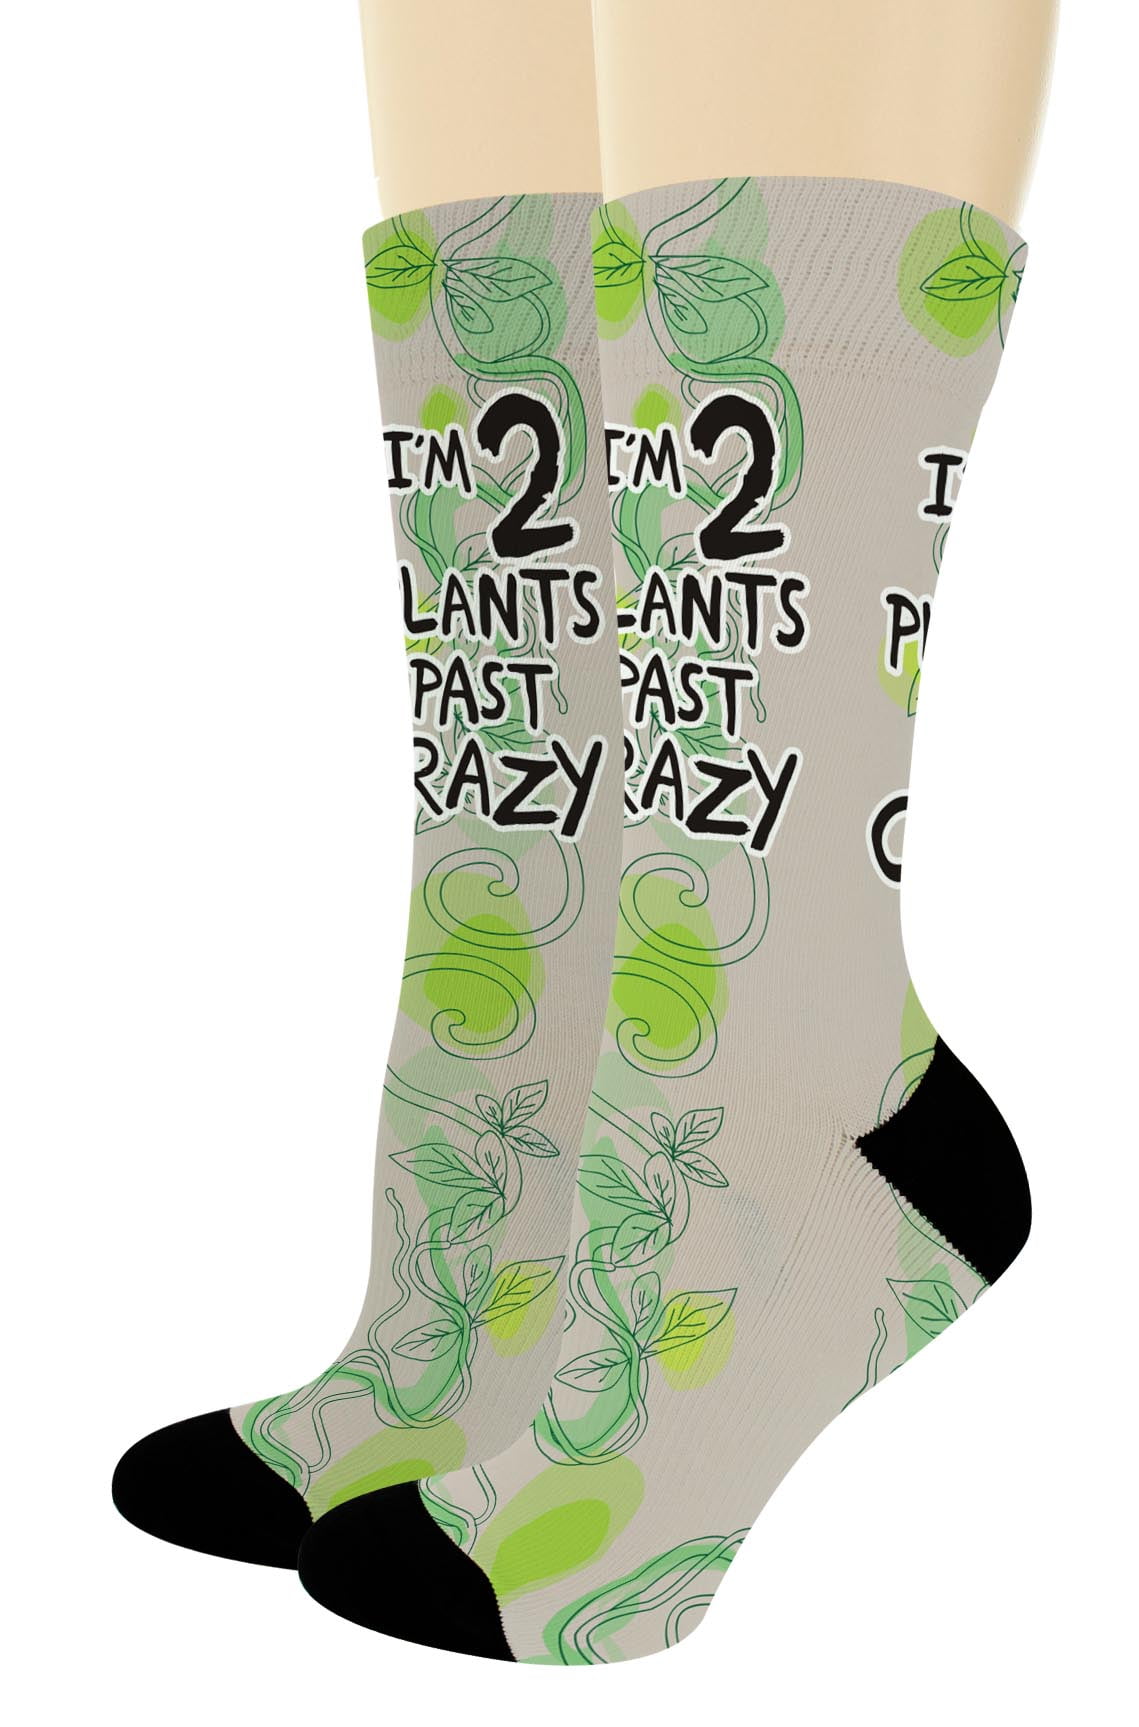 Asparagus Garden Socks Socks Food Gardening Gifts Colorful Socks Garden Cute Socks Asparagus Socks Socks Gift Vegetable Funny Socks